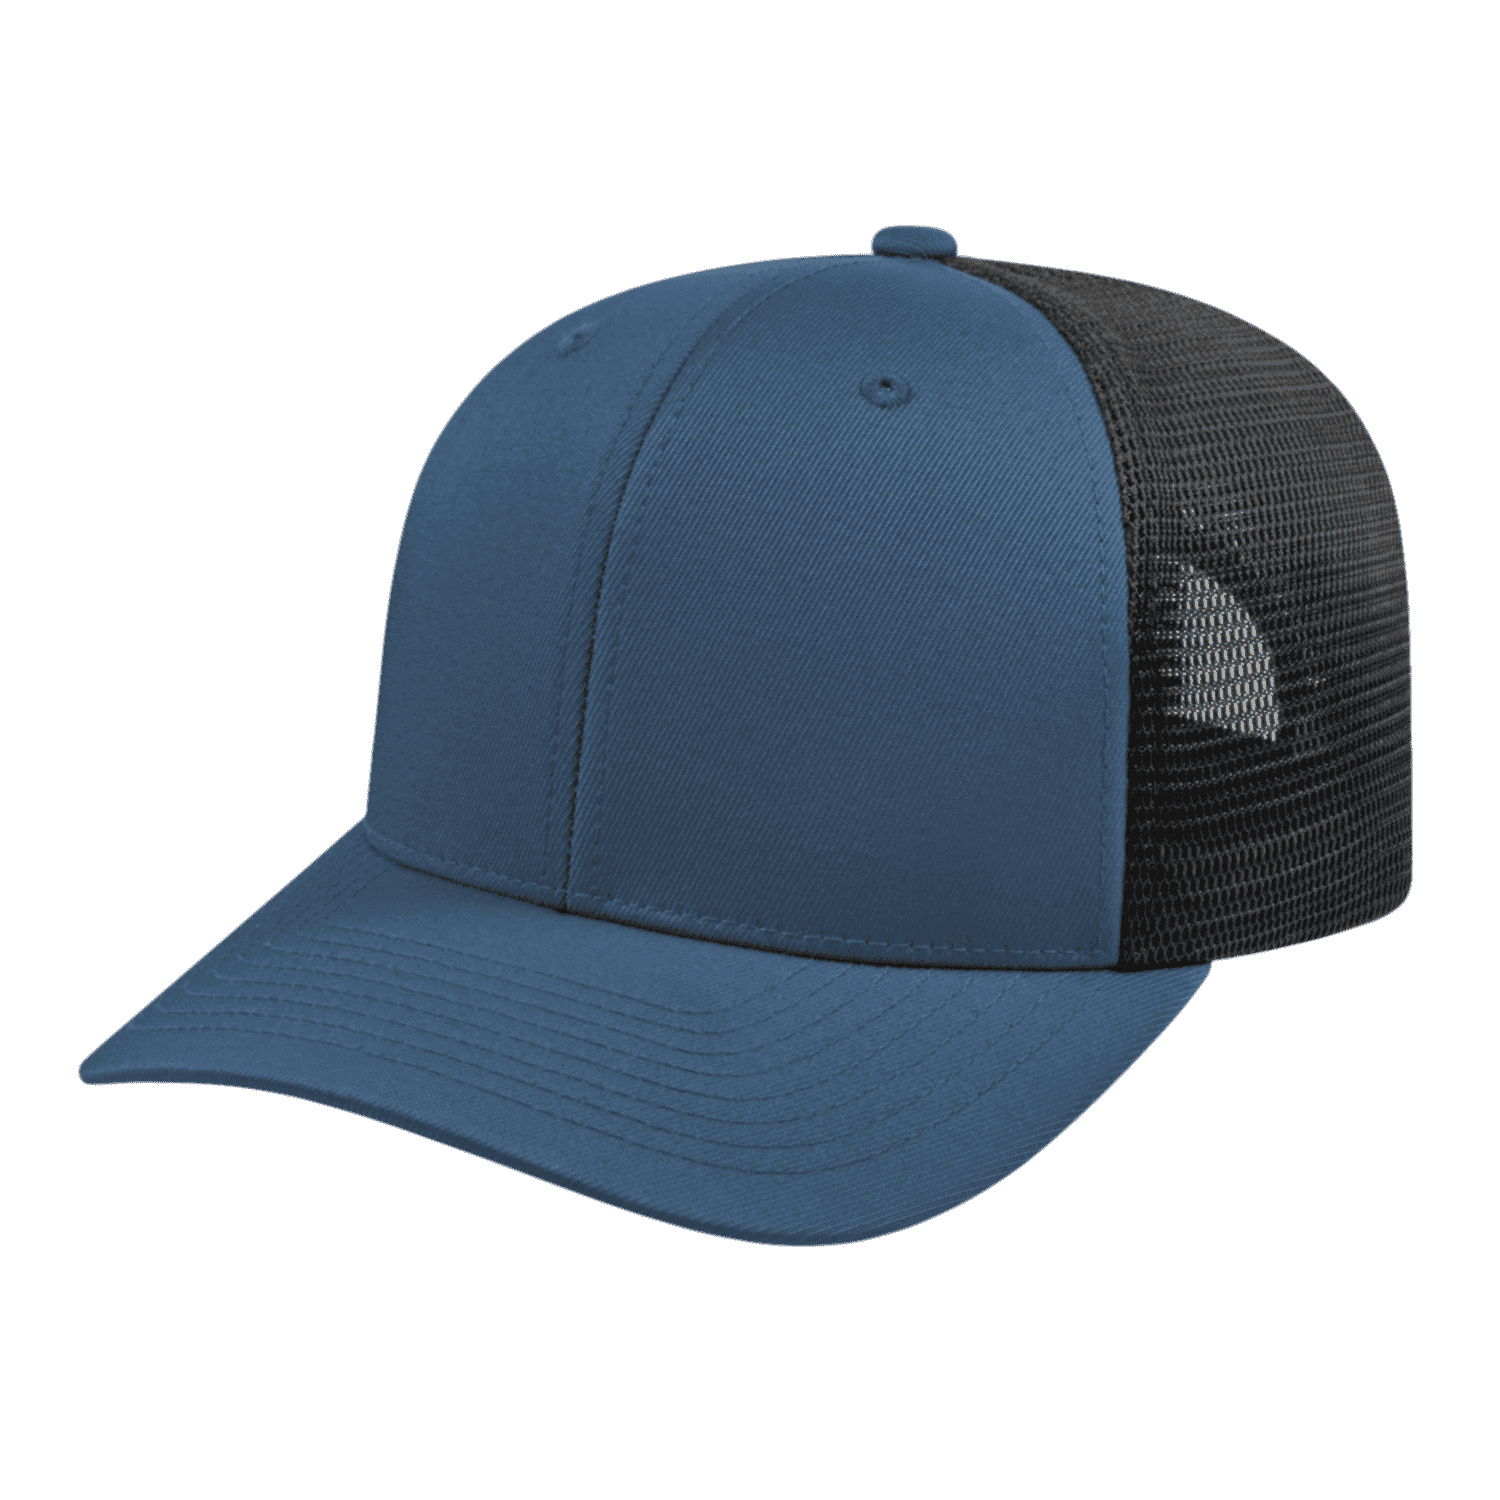 Cap America i8502 Flexfit 110 Trucker Mesh Back Cap - Indigo Blue Blac | Flex Caps